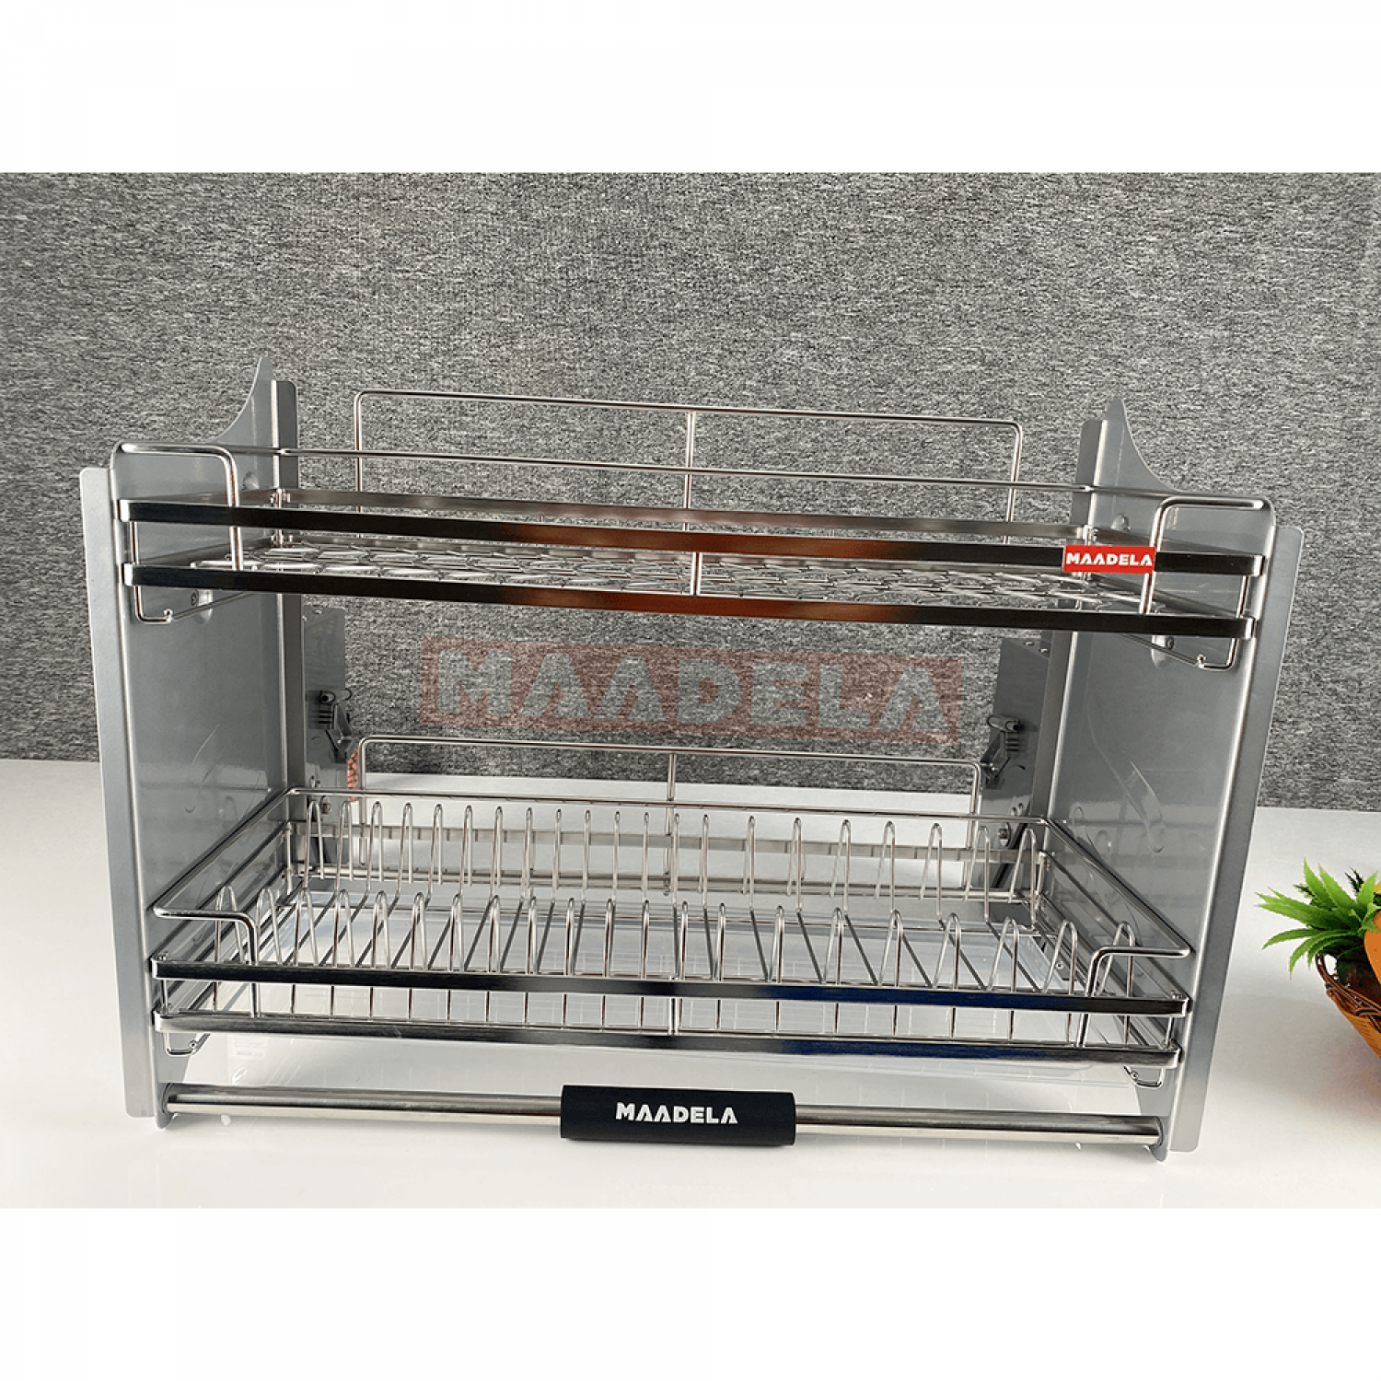 Giá bát đĩa nâng hạ Inox 304 cho tủ bếp trên Maadela MP-G30-2.80 sở hữu thiết kế sang trọng và hiện đại, thích hợp với mọi không gian nhà bếp